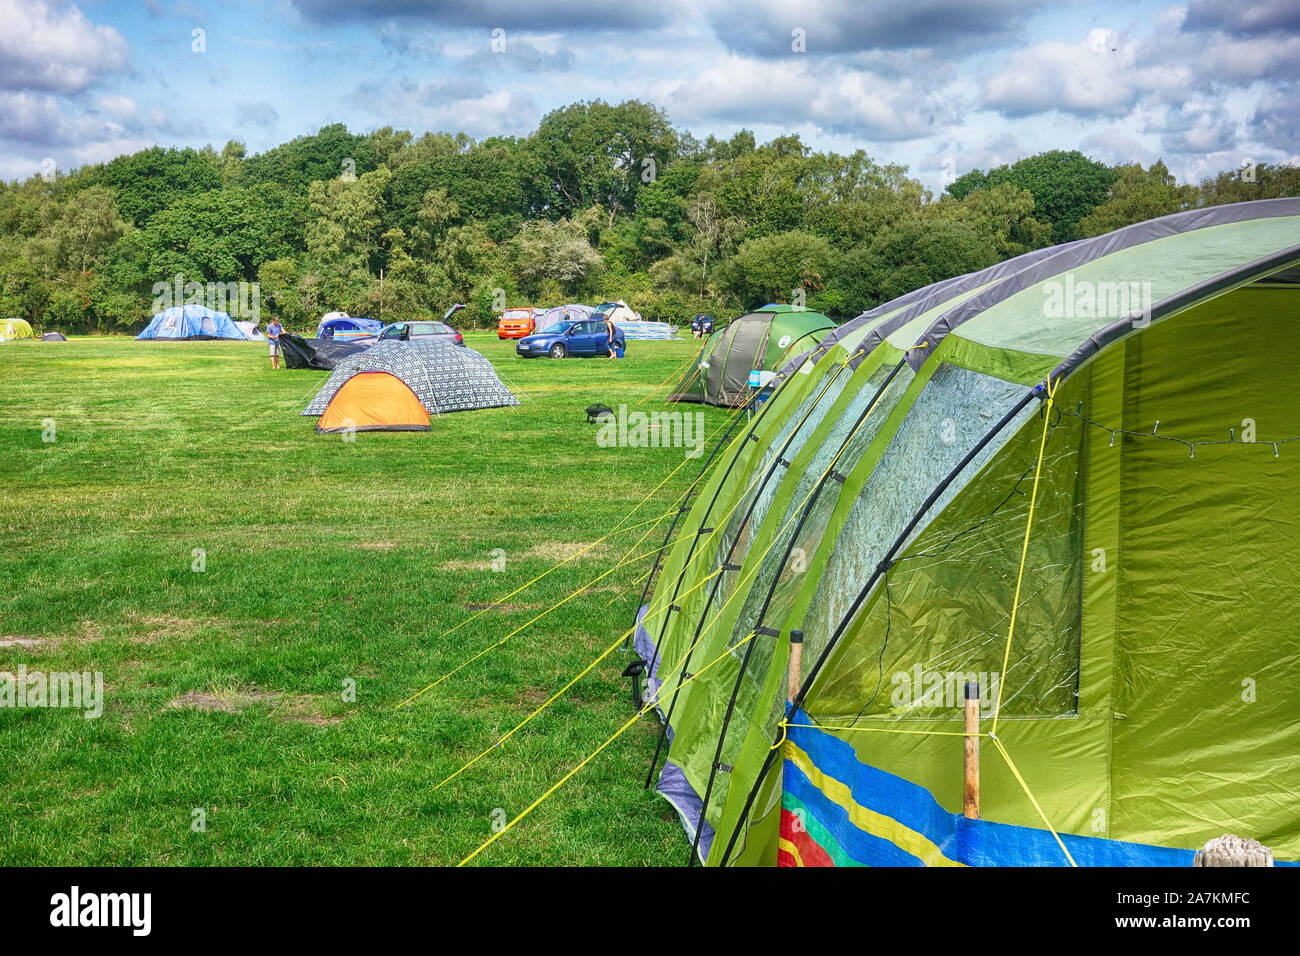 Norden, Inghilterra - 29 AGO 2018: tende colorate su un campo verde  campeggio sotto il blu cielo nuvoloso, con persone campeggio e mettere le  loro tenda Foto stock - Alamy